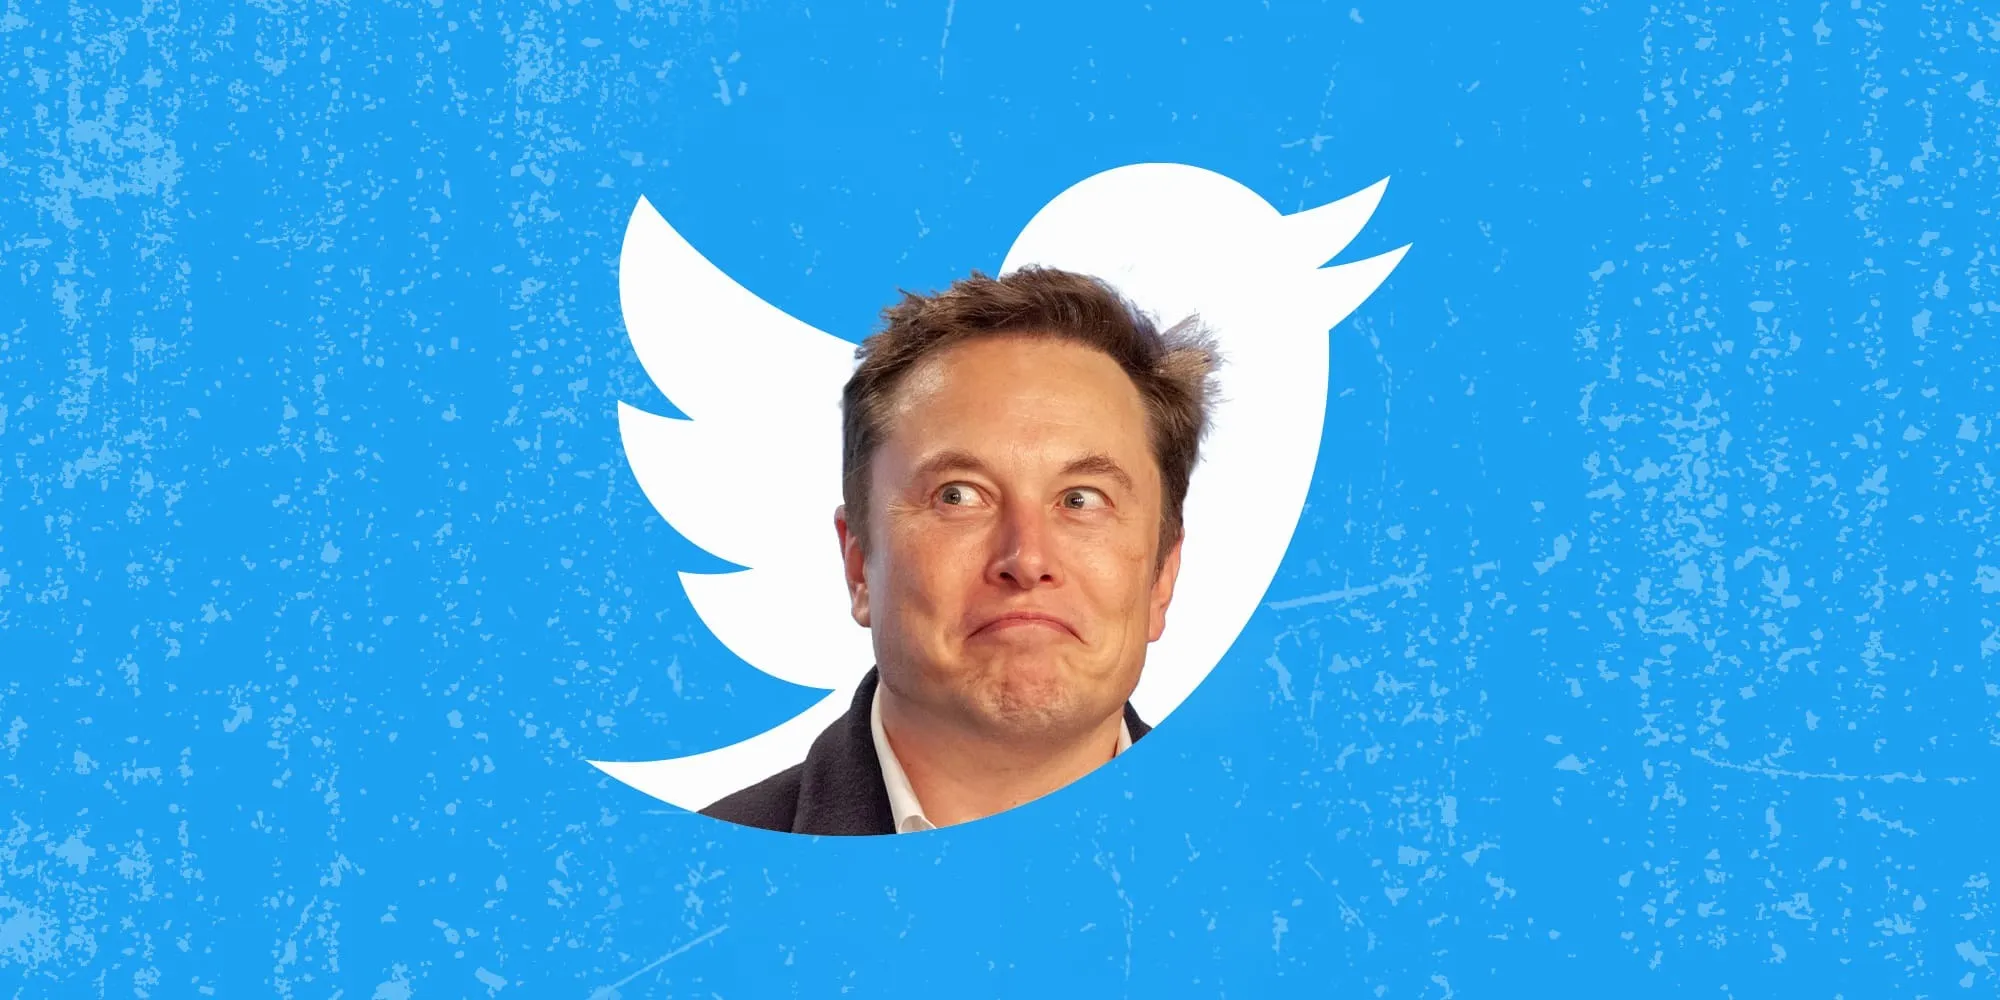 إيلون ماسك يصبح الرئيس التنفيذي لشركة تويتر بعد الاقتراب من إتمام الصفقة